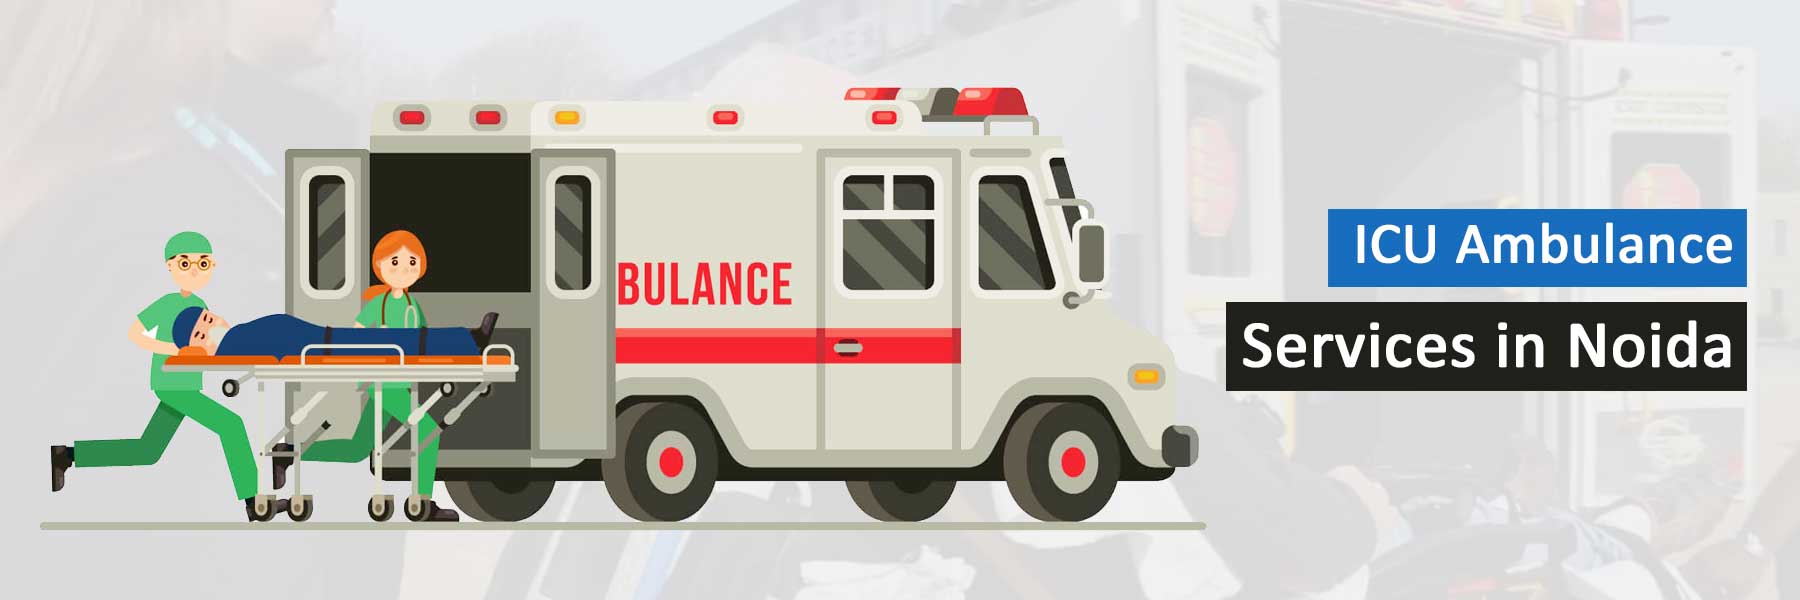 ICU Ambulance Services in Noida